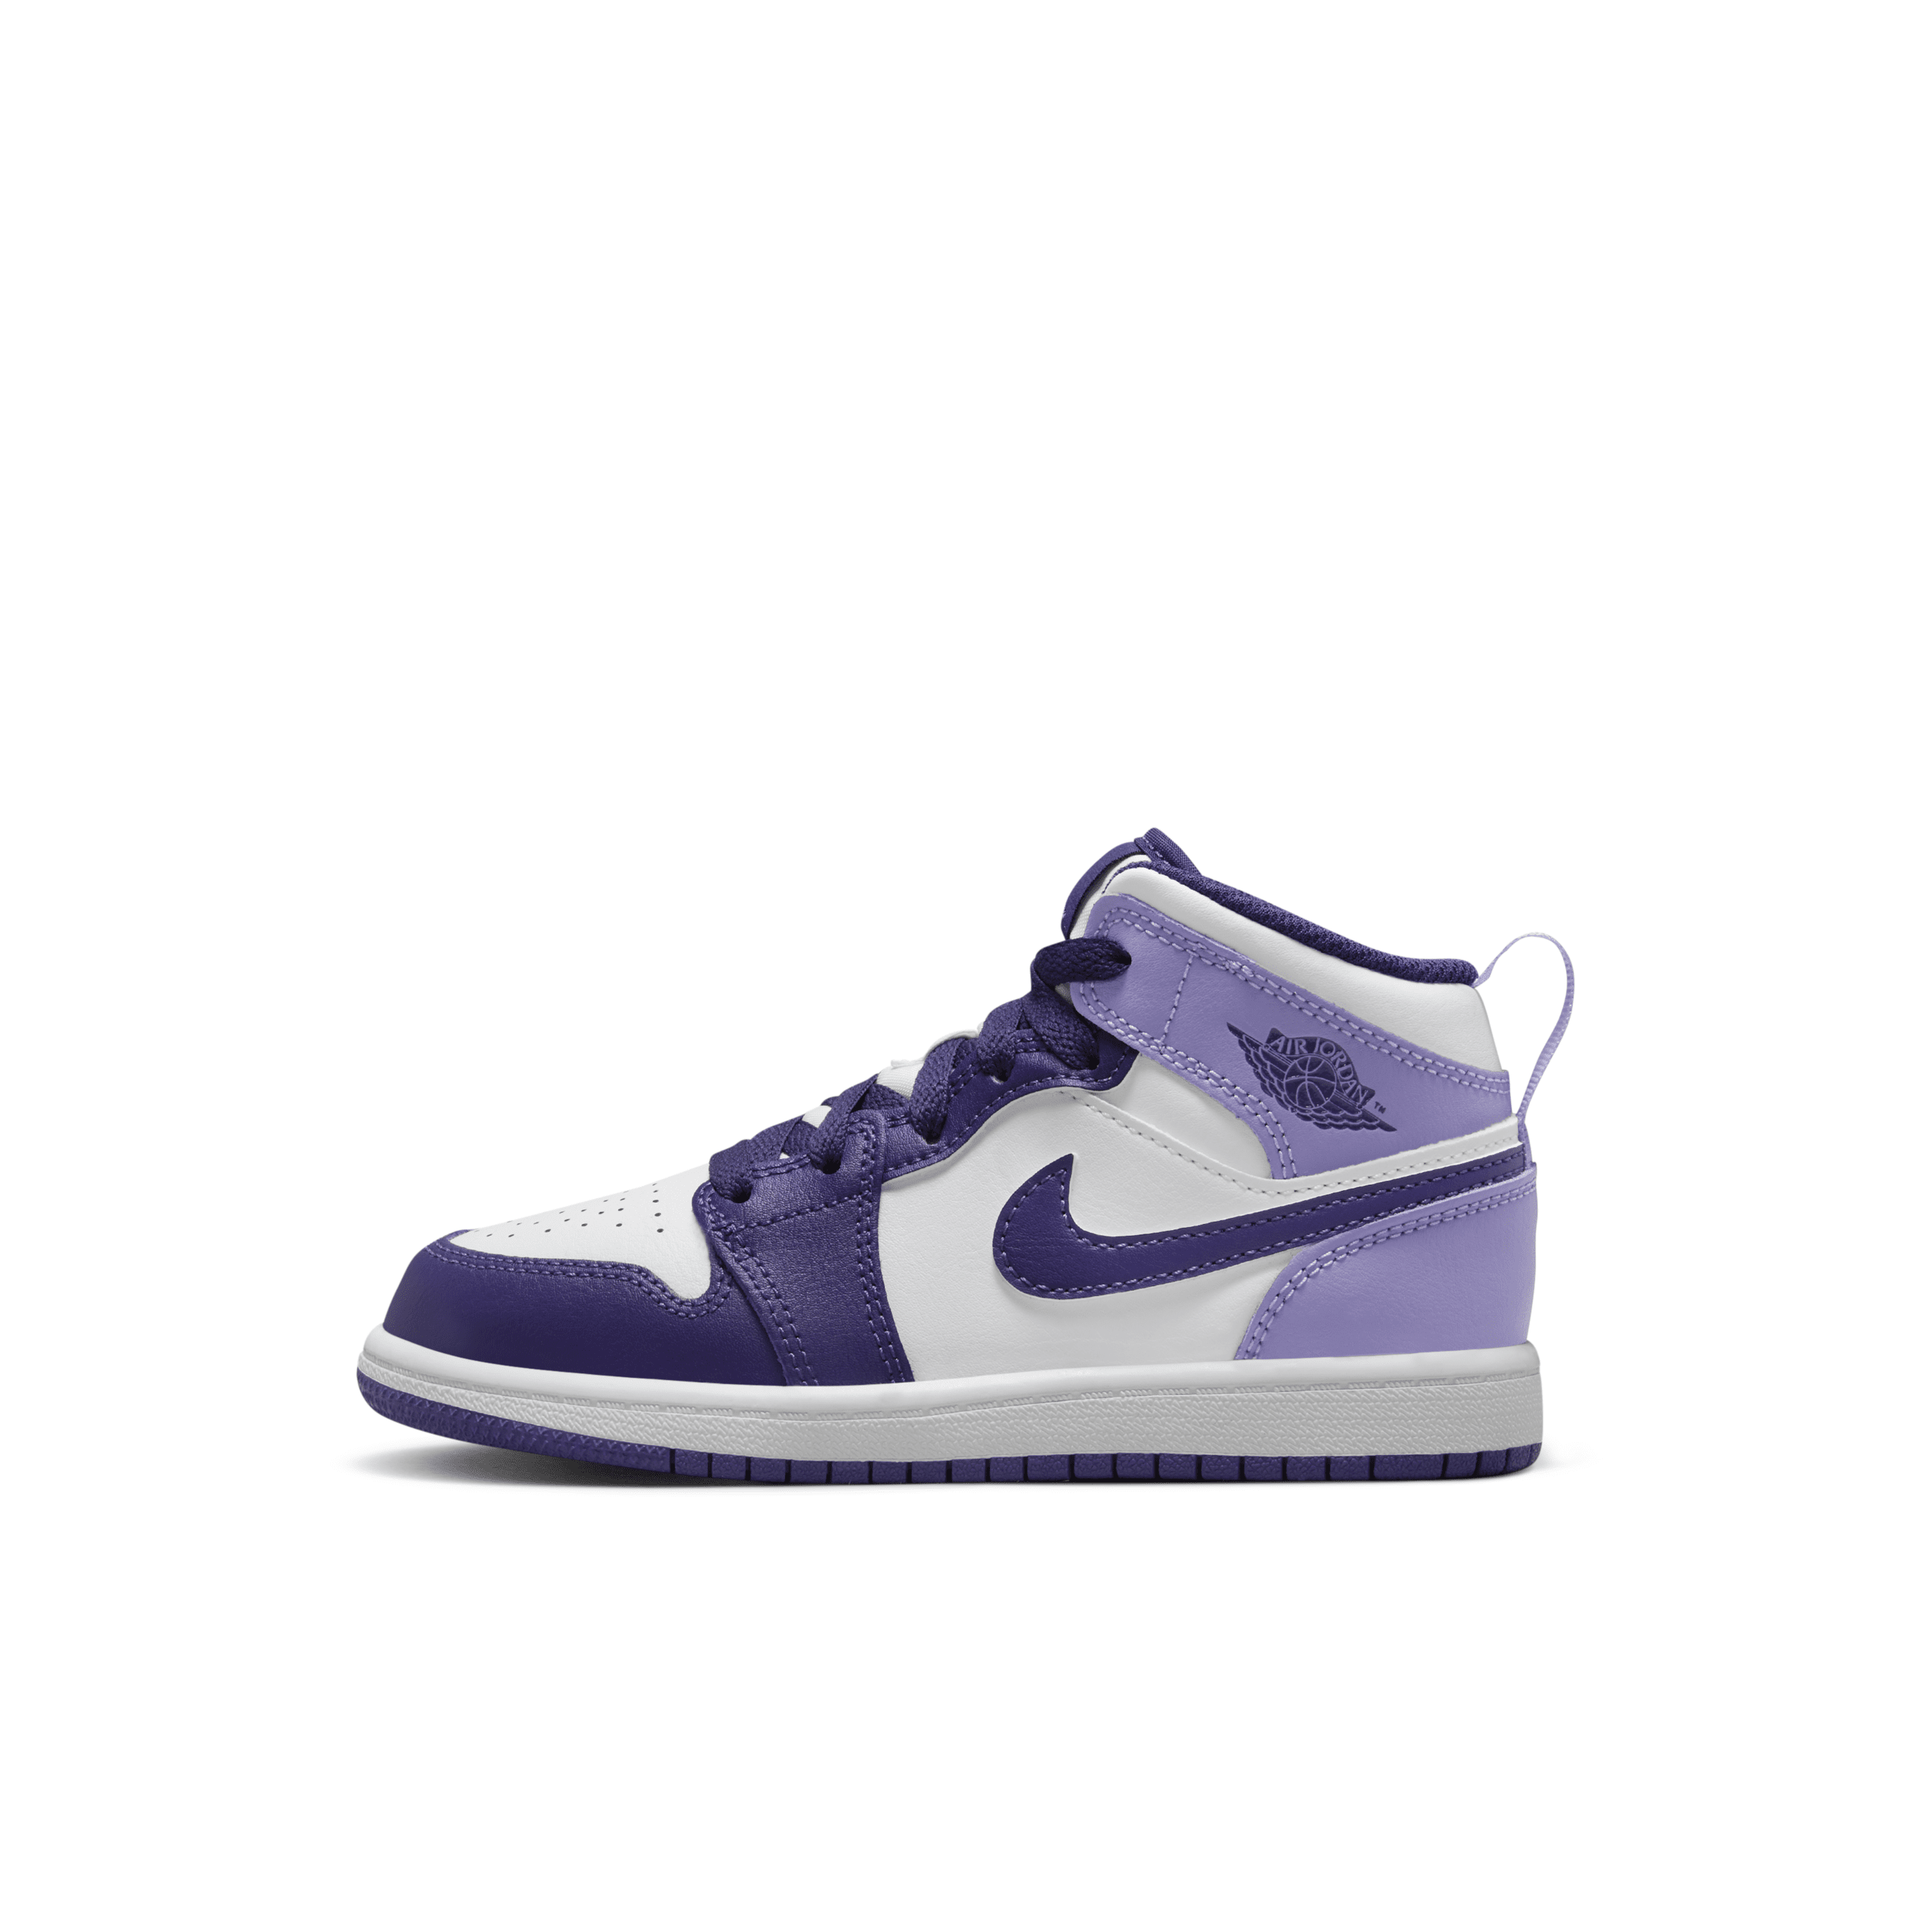 Jordan Babies' 1 Mid Little Kids' Shoes In Purple